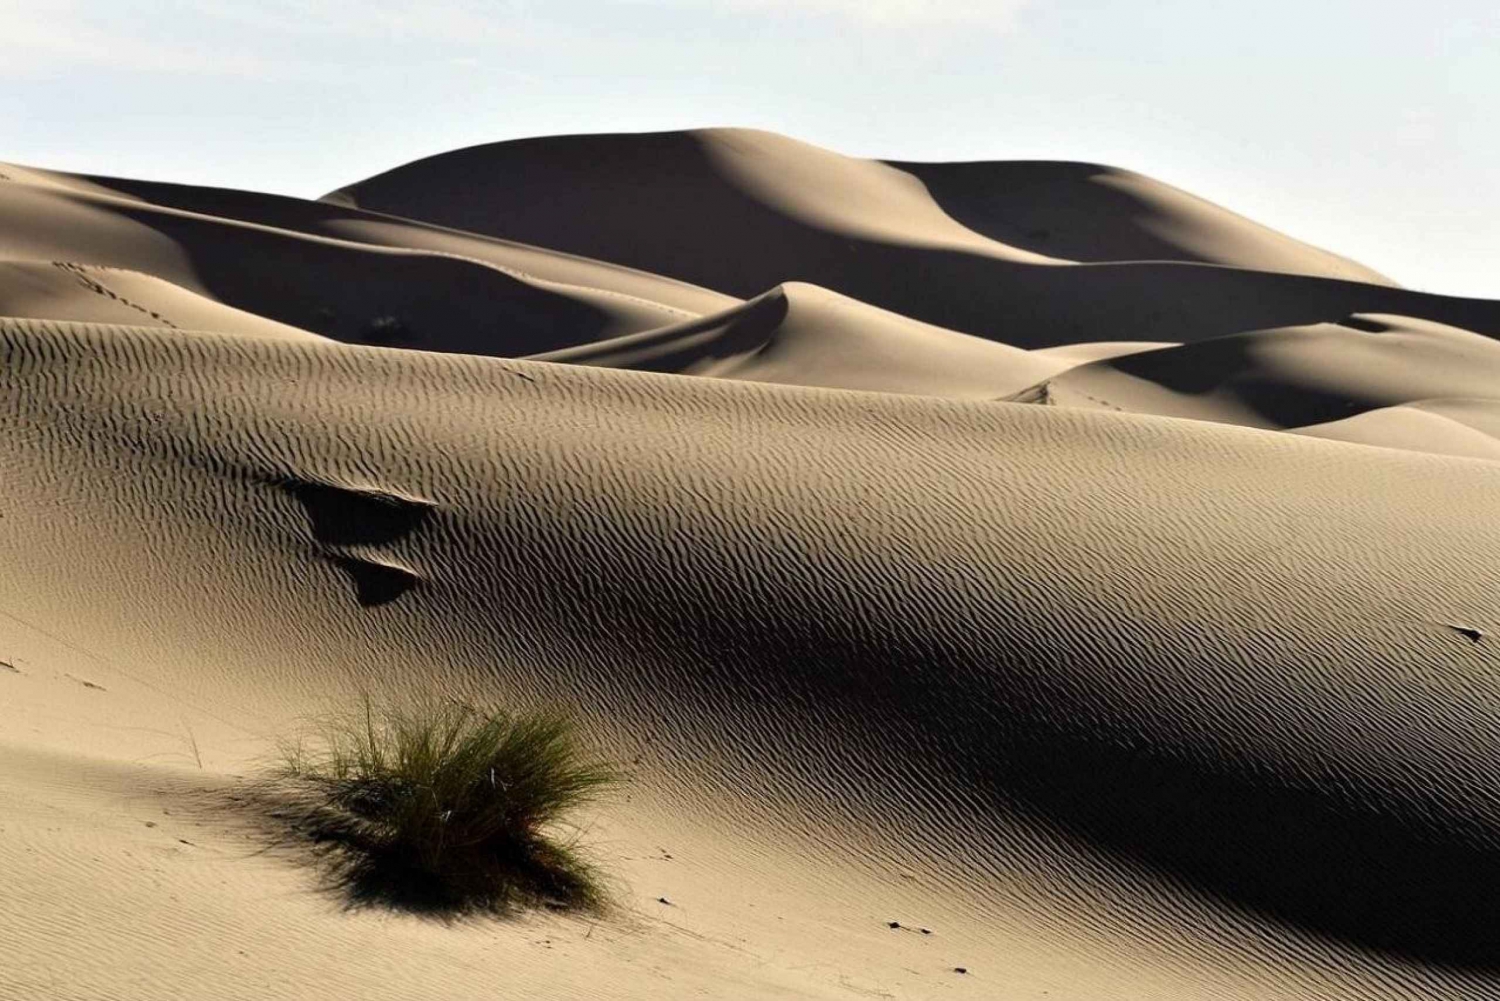 Tour nel deserto di 3 giorni da Marrakech alle dune di Merzouga e al cammello